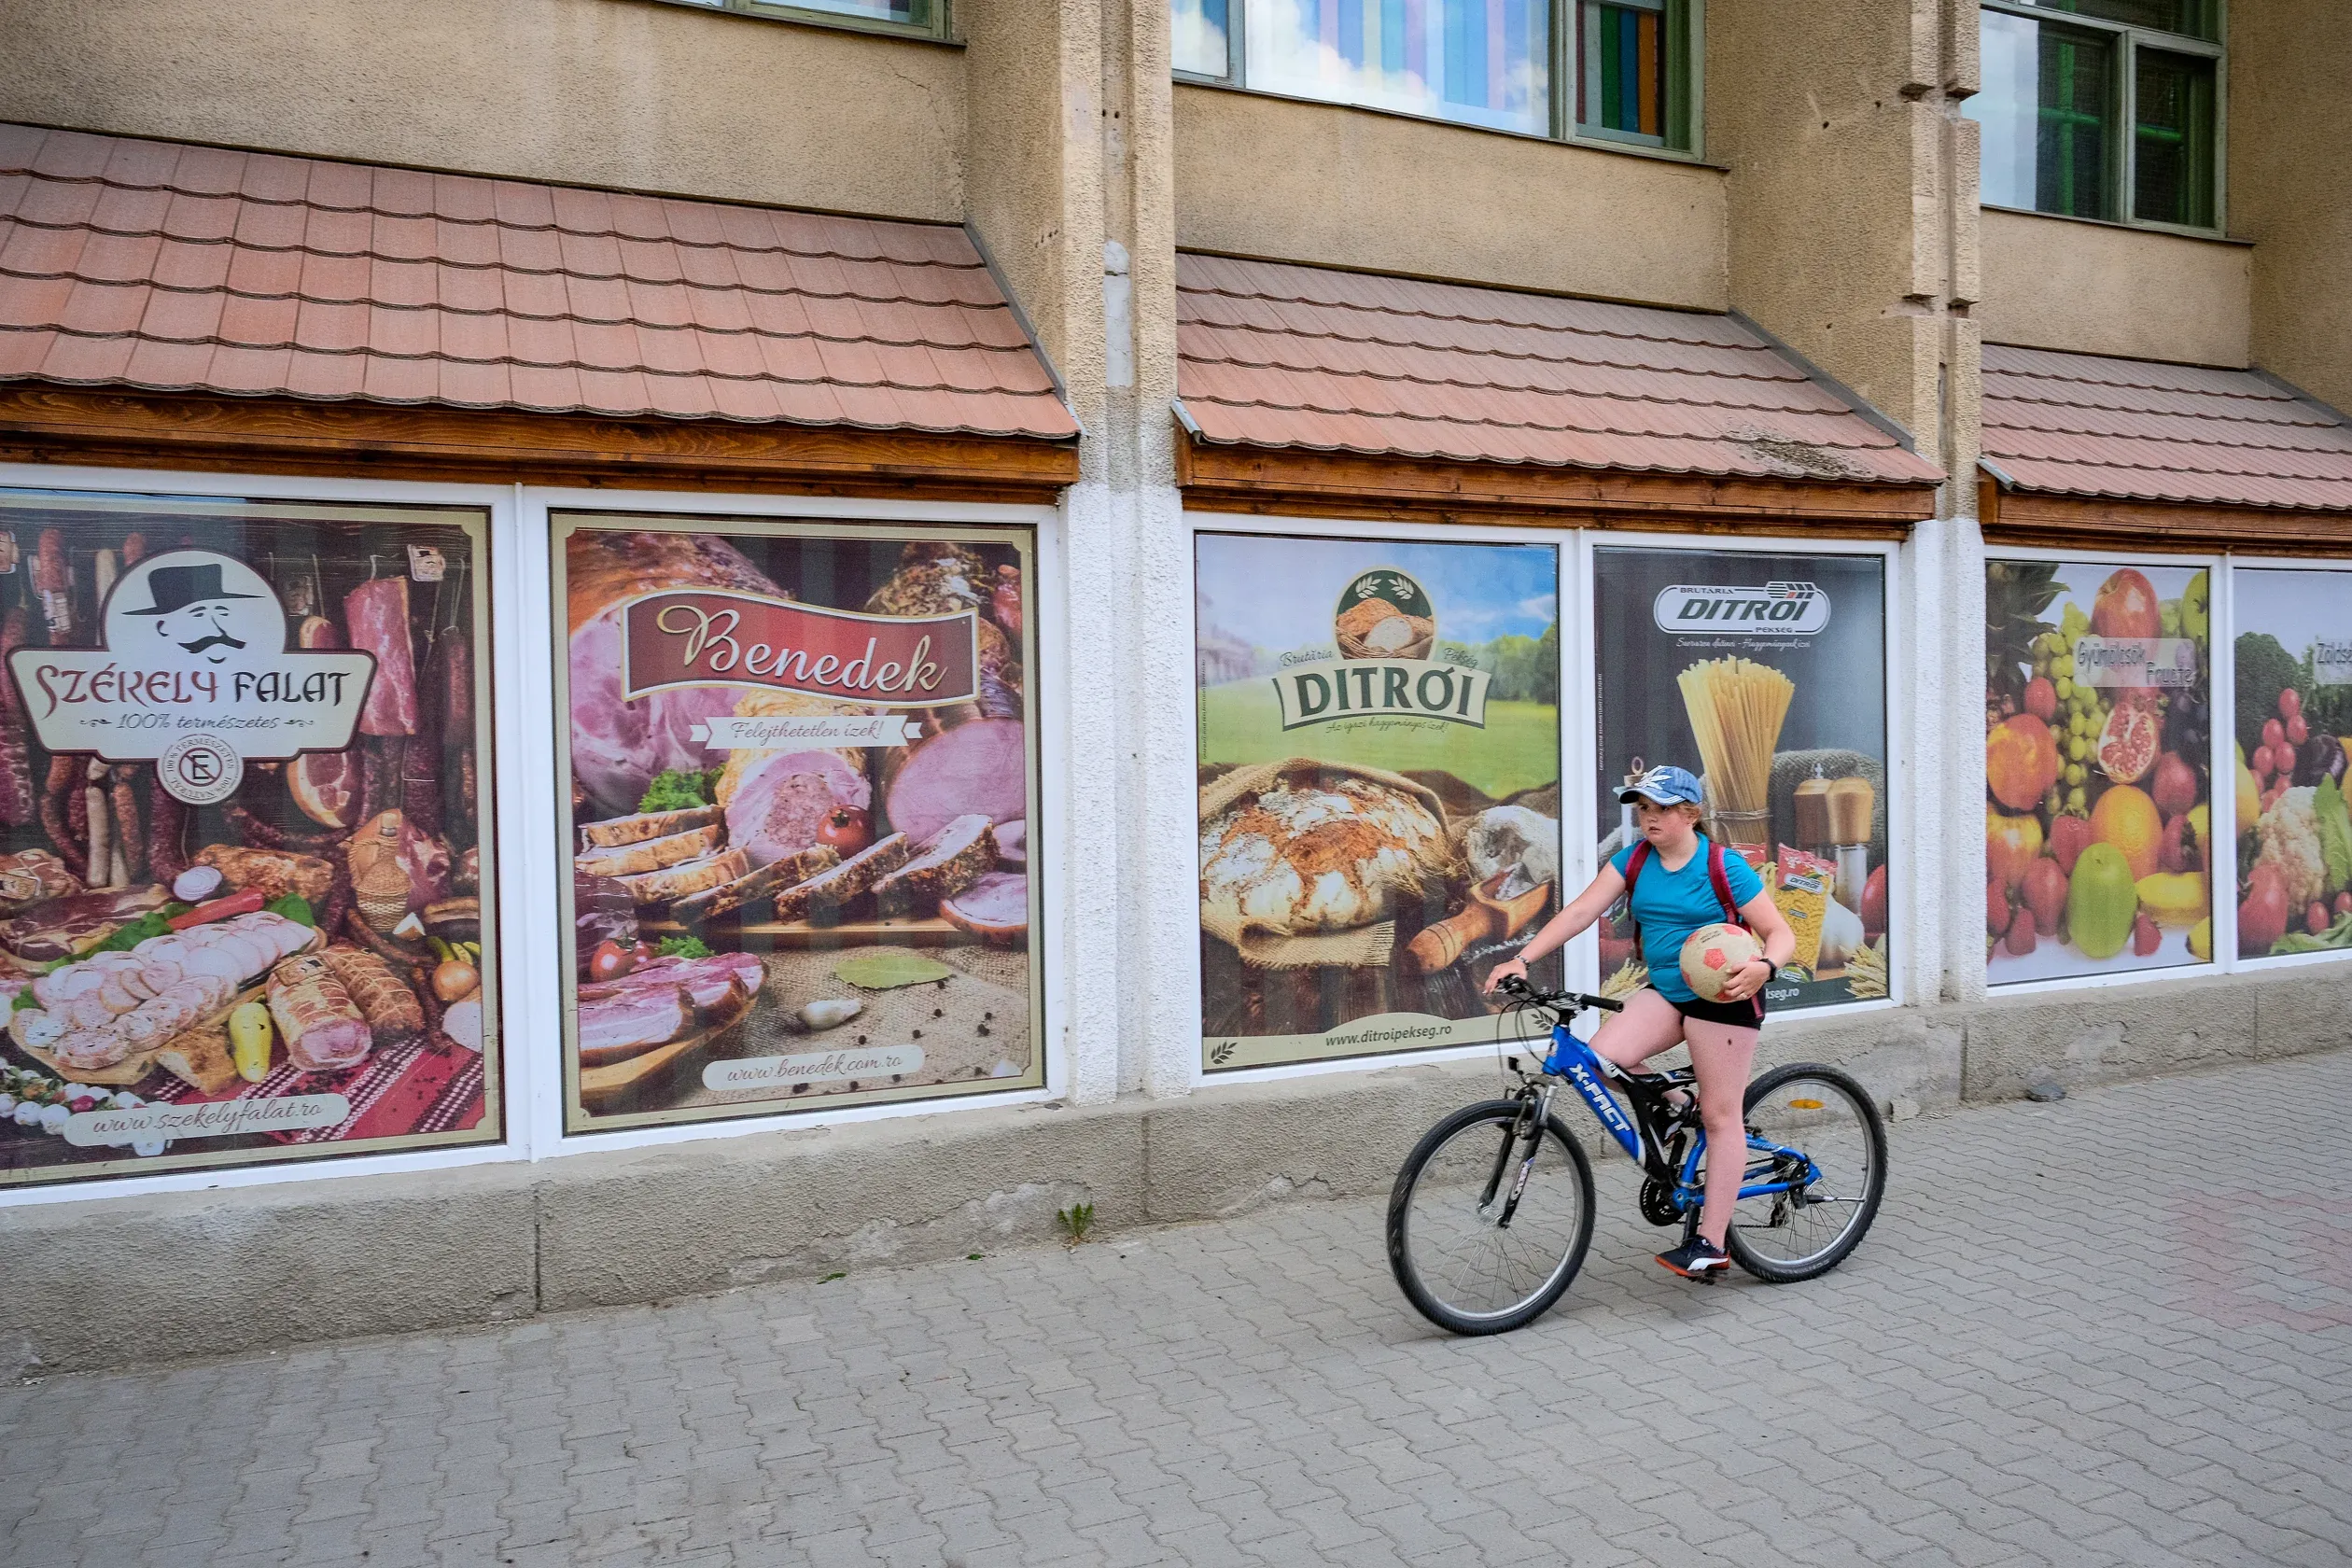 A Ditrói pékség reklámja a község központjában lévő élelmiszerüzlet ablakán – Fotó: Márkos Tamás/Transtelex